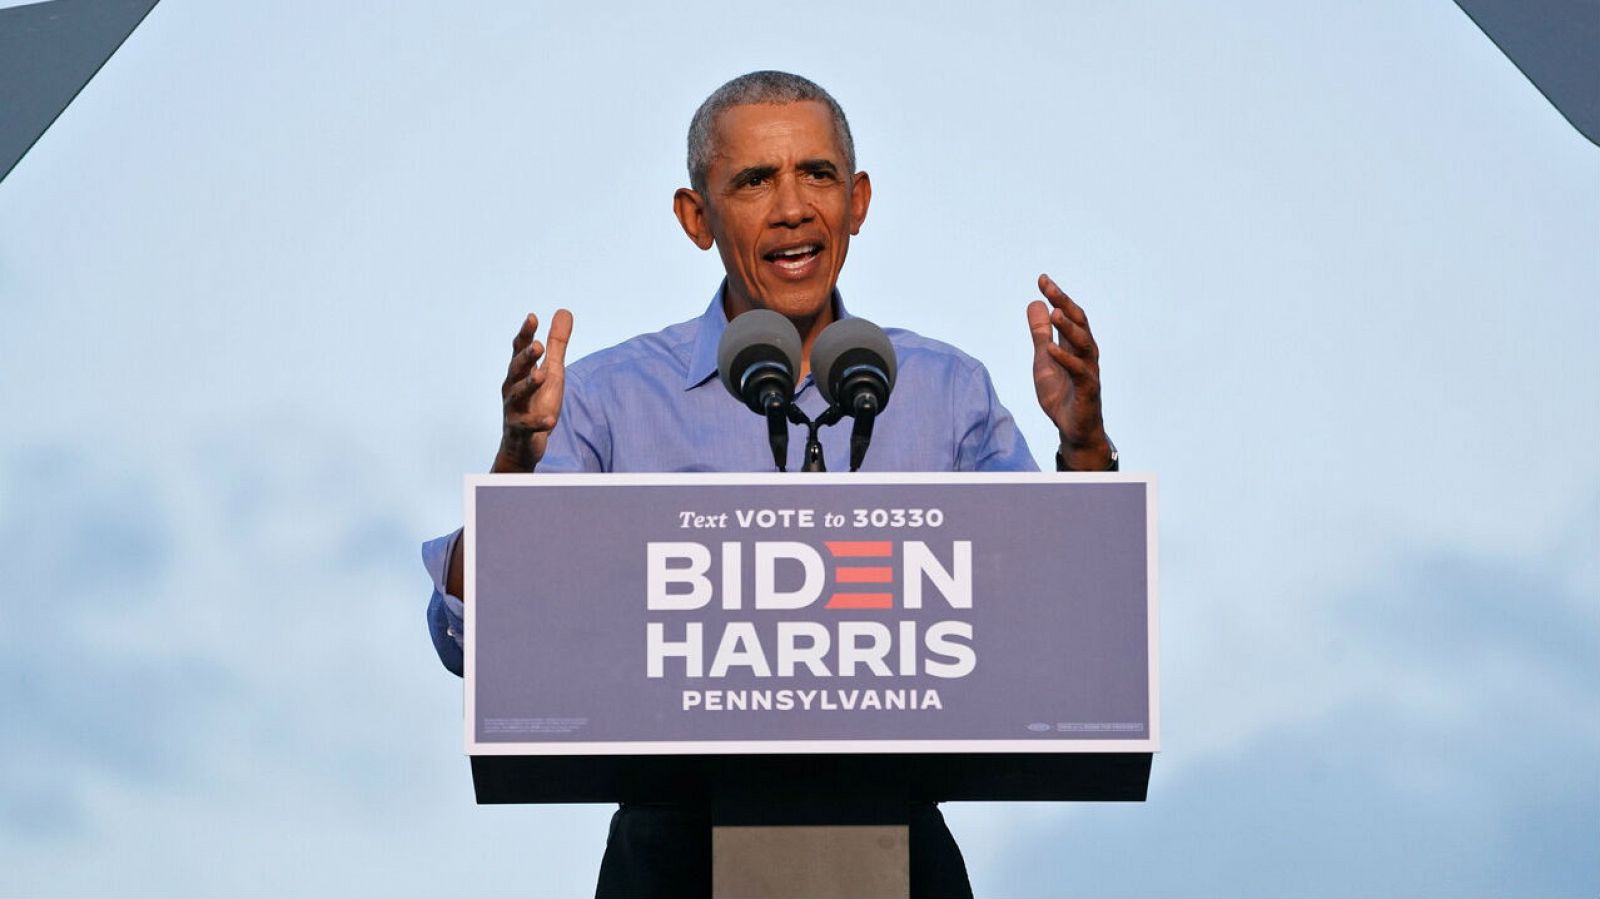 El expresidente de Estados Unidos, Barack Obama, hace campaña en nombre del candidato presidencial demócrata y su exvicepresidente Joe Biden en Filadelfia, Pensilvania, Estados Unidos.